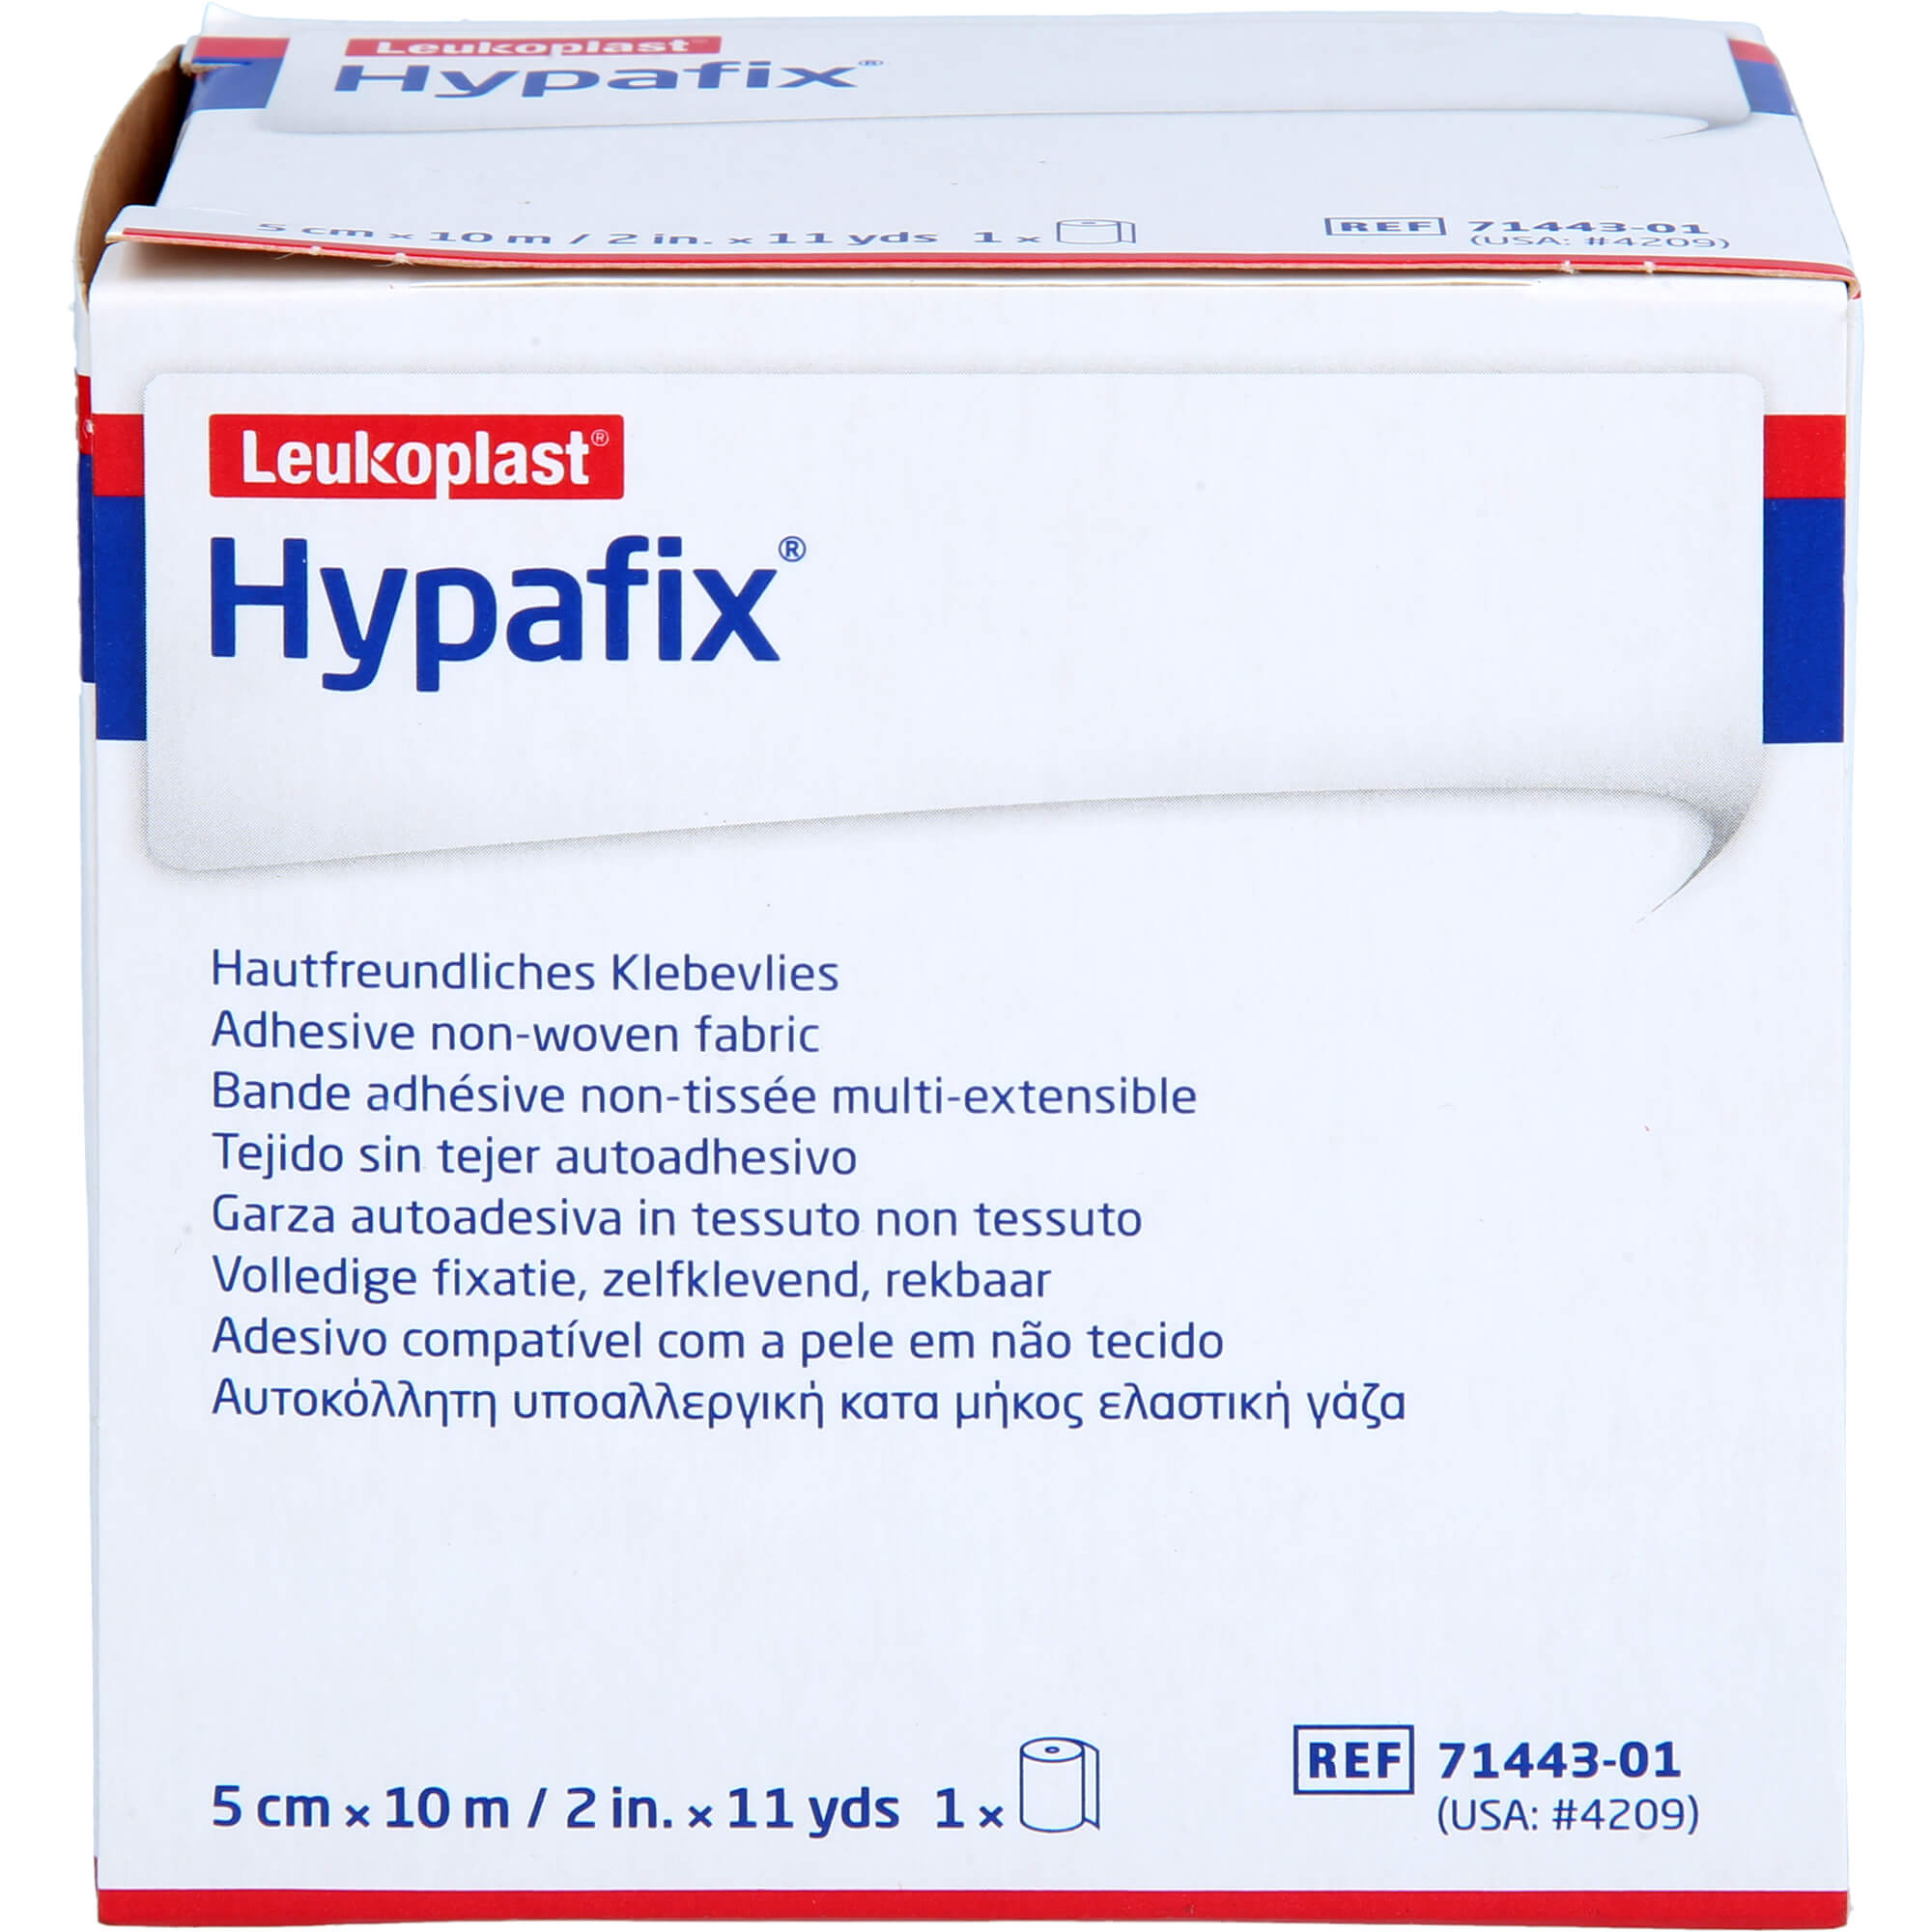 HYPAFIX Klebevlies hypoallergen 5 cmx10 m